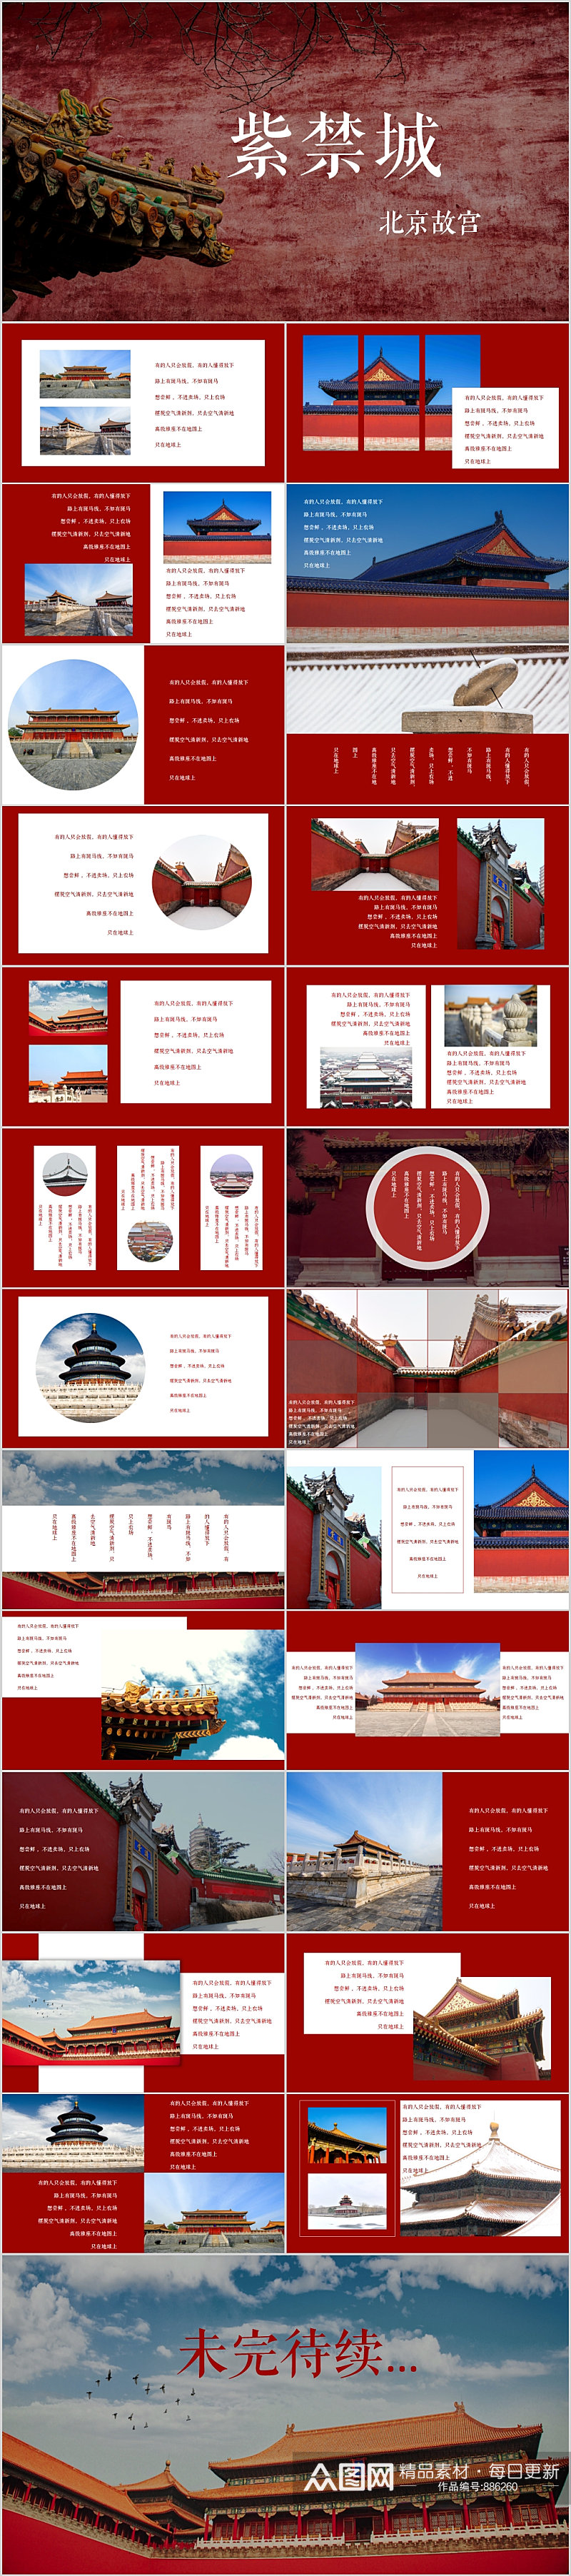 红色大气紫禁城北京故宫旅游大气PPT模版素材